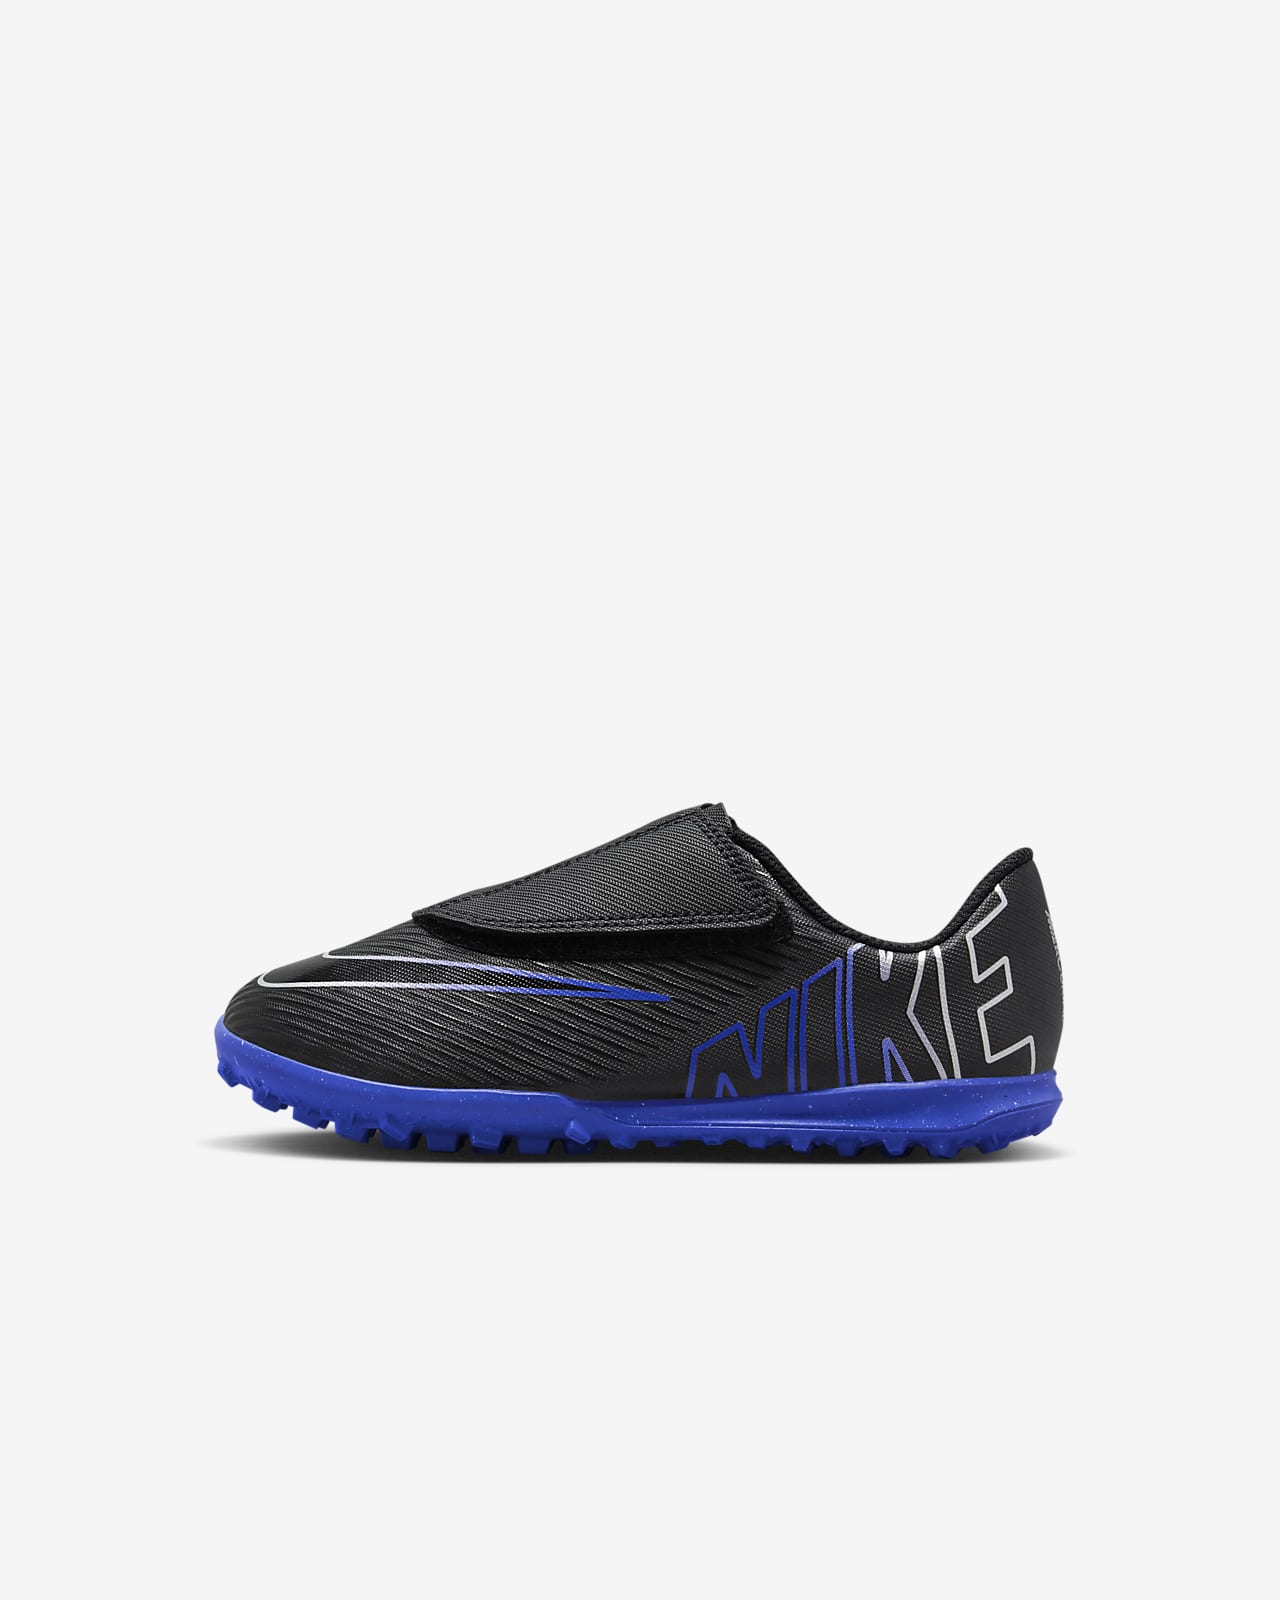 Buty piłkarskie typu low top na nawierzchnie typu turf dla małych dzieci Nike Jr. Mercurial Vapor 15 Club